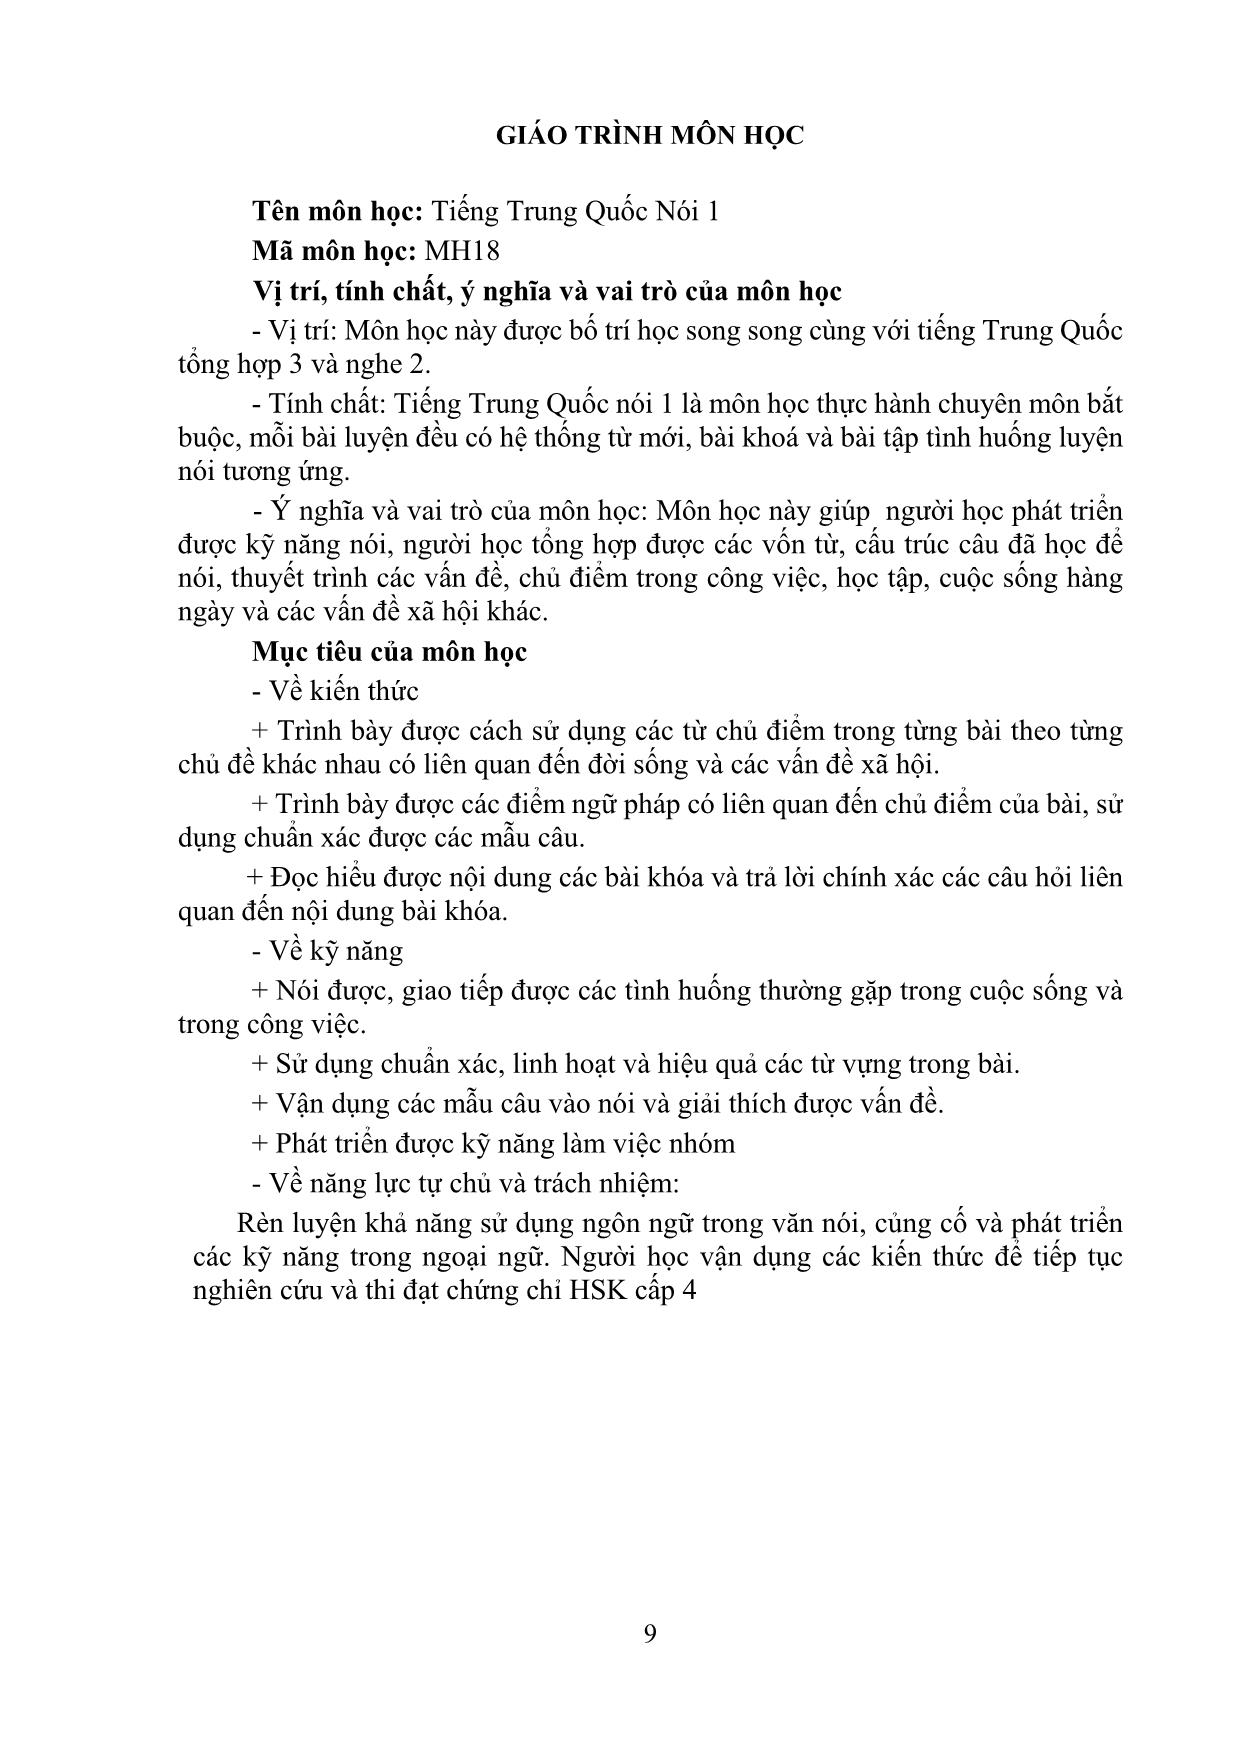 Giáo trình Tiếng Trung Quốc nói 1 trang 9